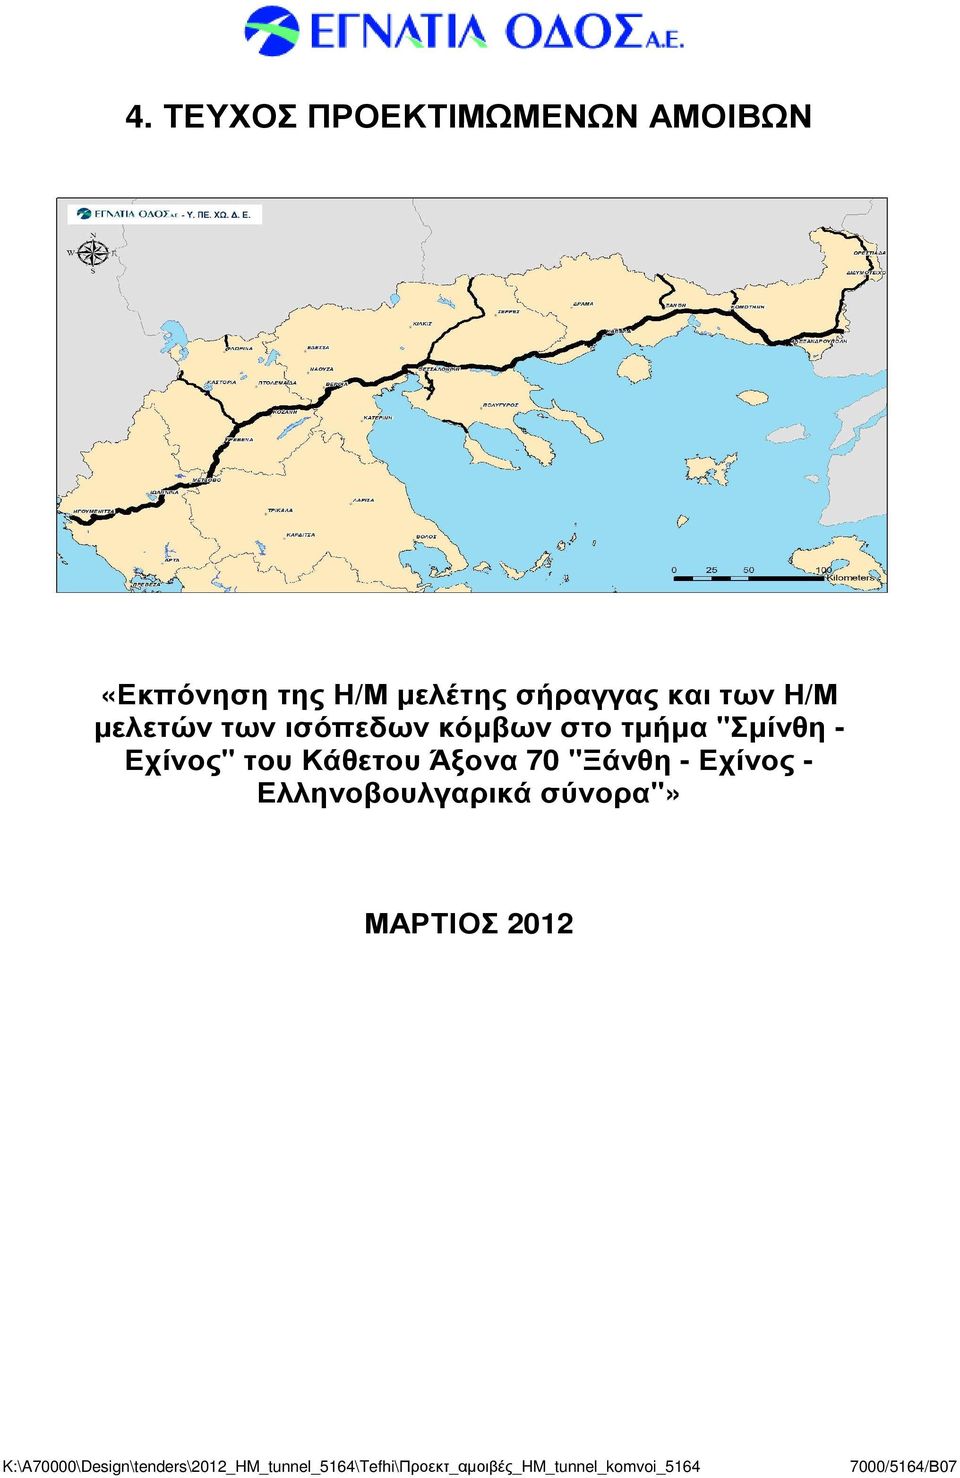 Άξονα 70 "Ξάνθη - Εχίνος - Ελληνοβουλγαρικά σύνορα"» ΜΑΡΤΙΟΣ 2012